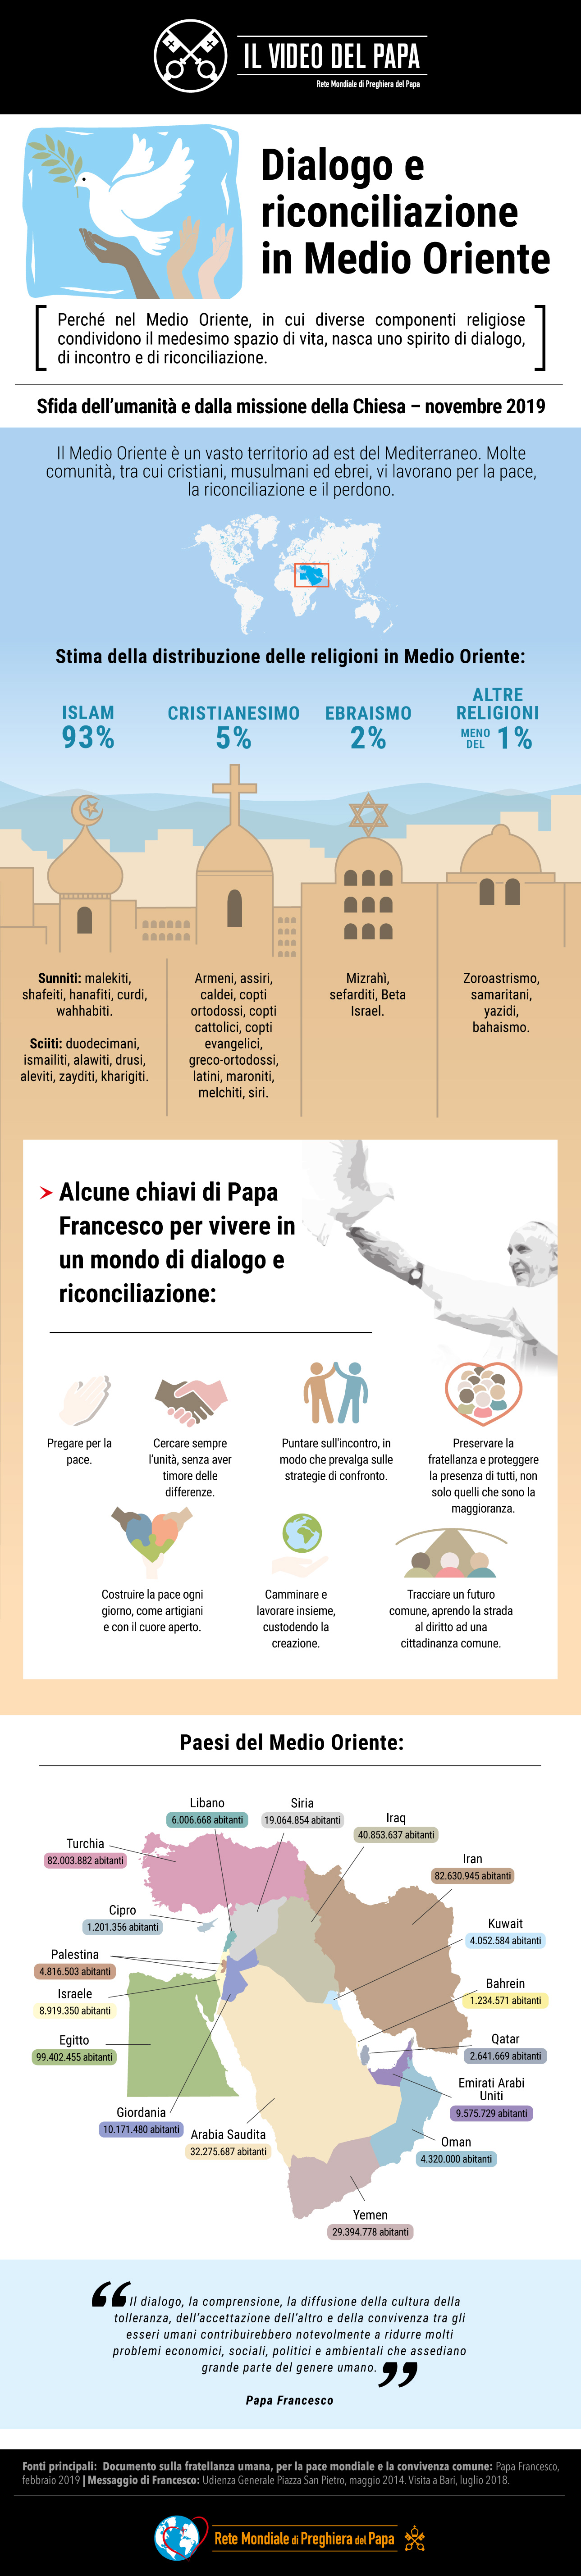 infografica-tpv-11-2019-it-il-video-del-papa-dialogo-e-riconciliazione-in-medio-oriente.jpg